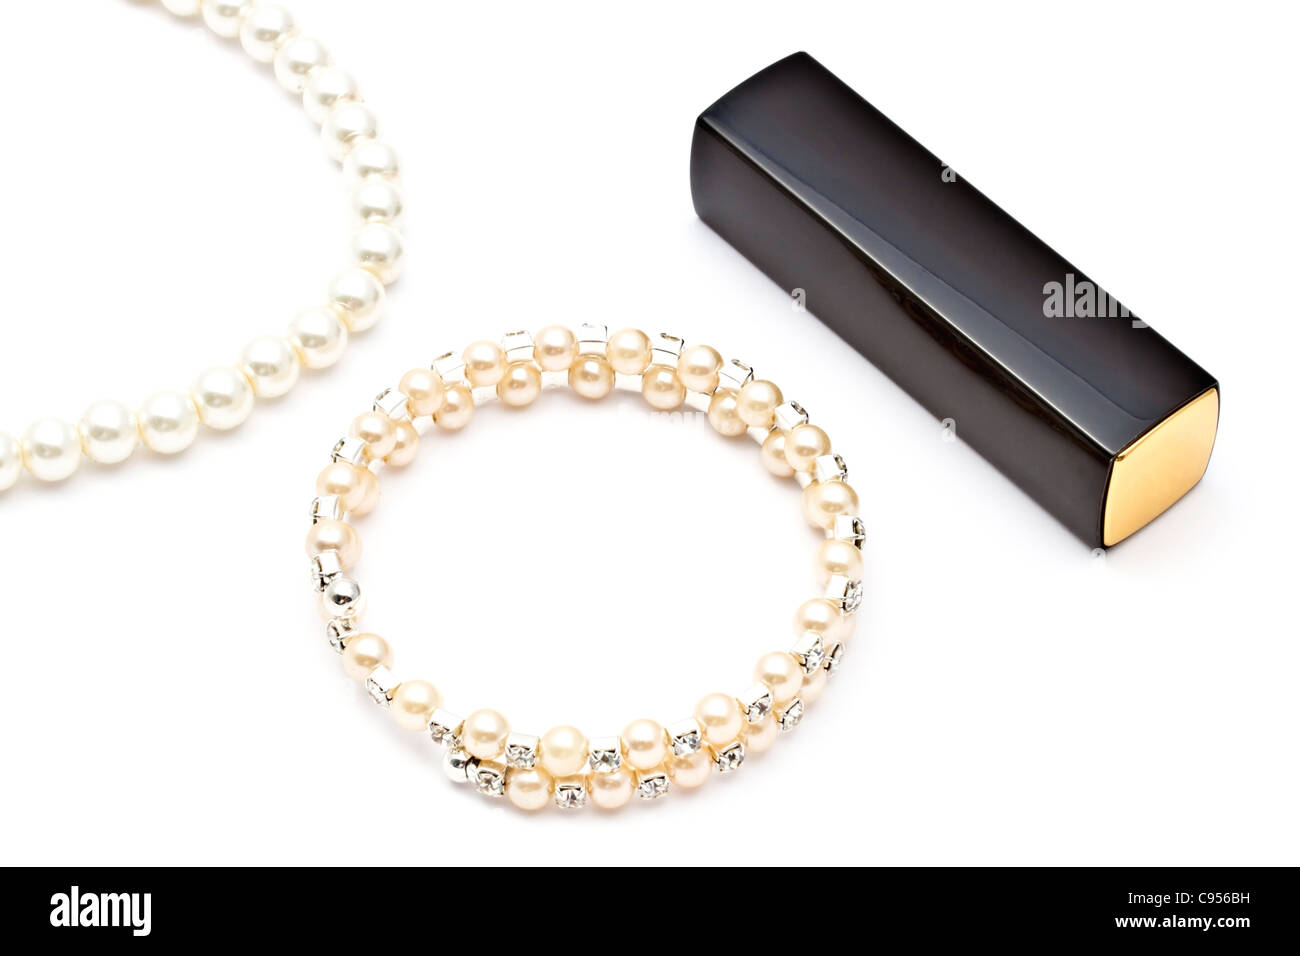 Perla bracciale ,collana e il rossetto su sfondo bianco Foto Stock